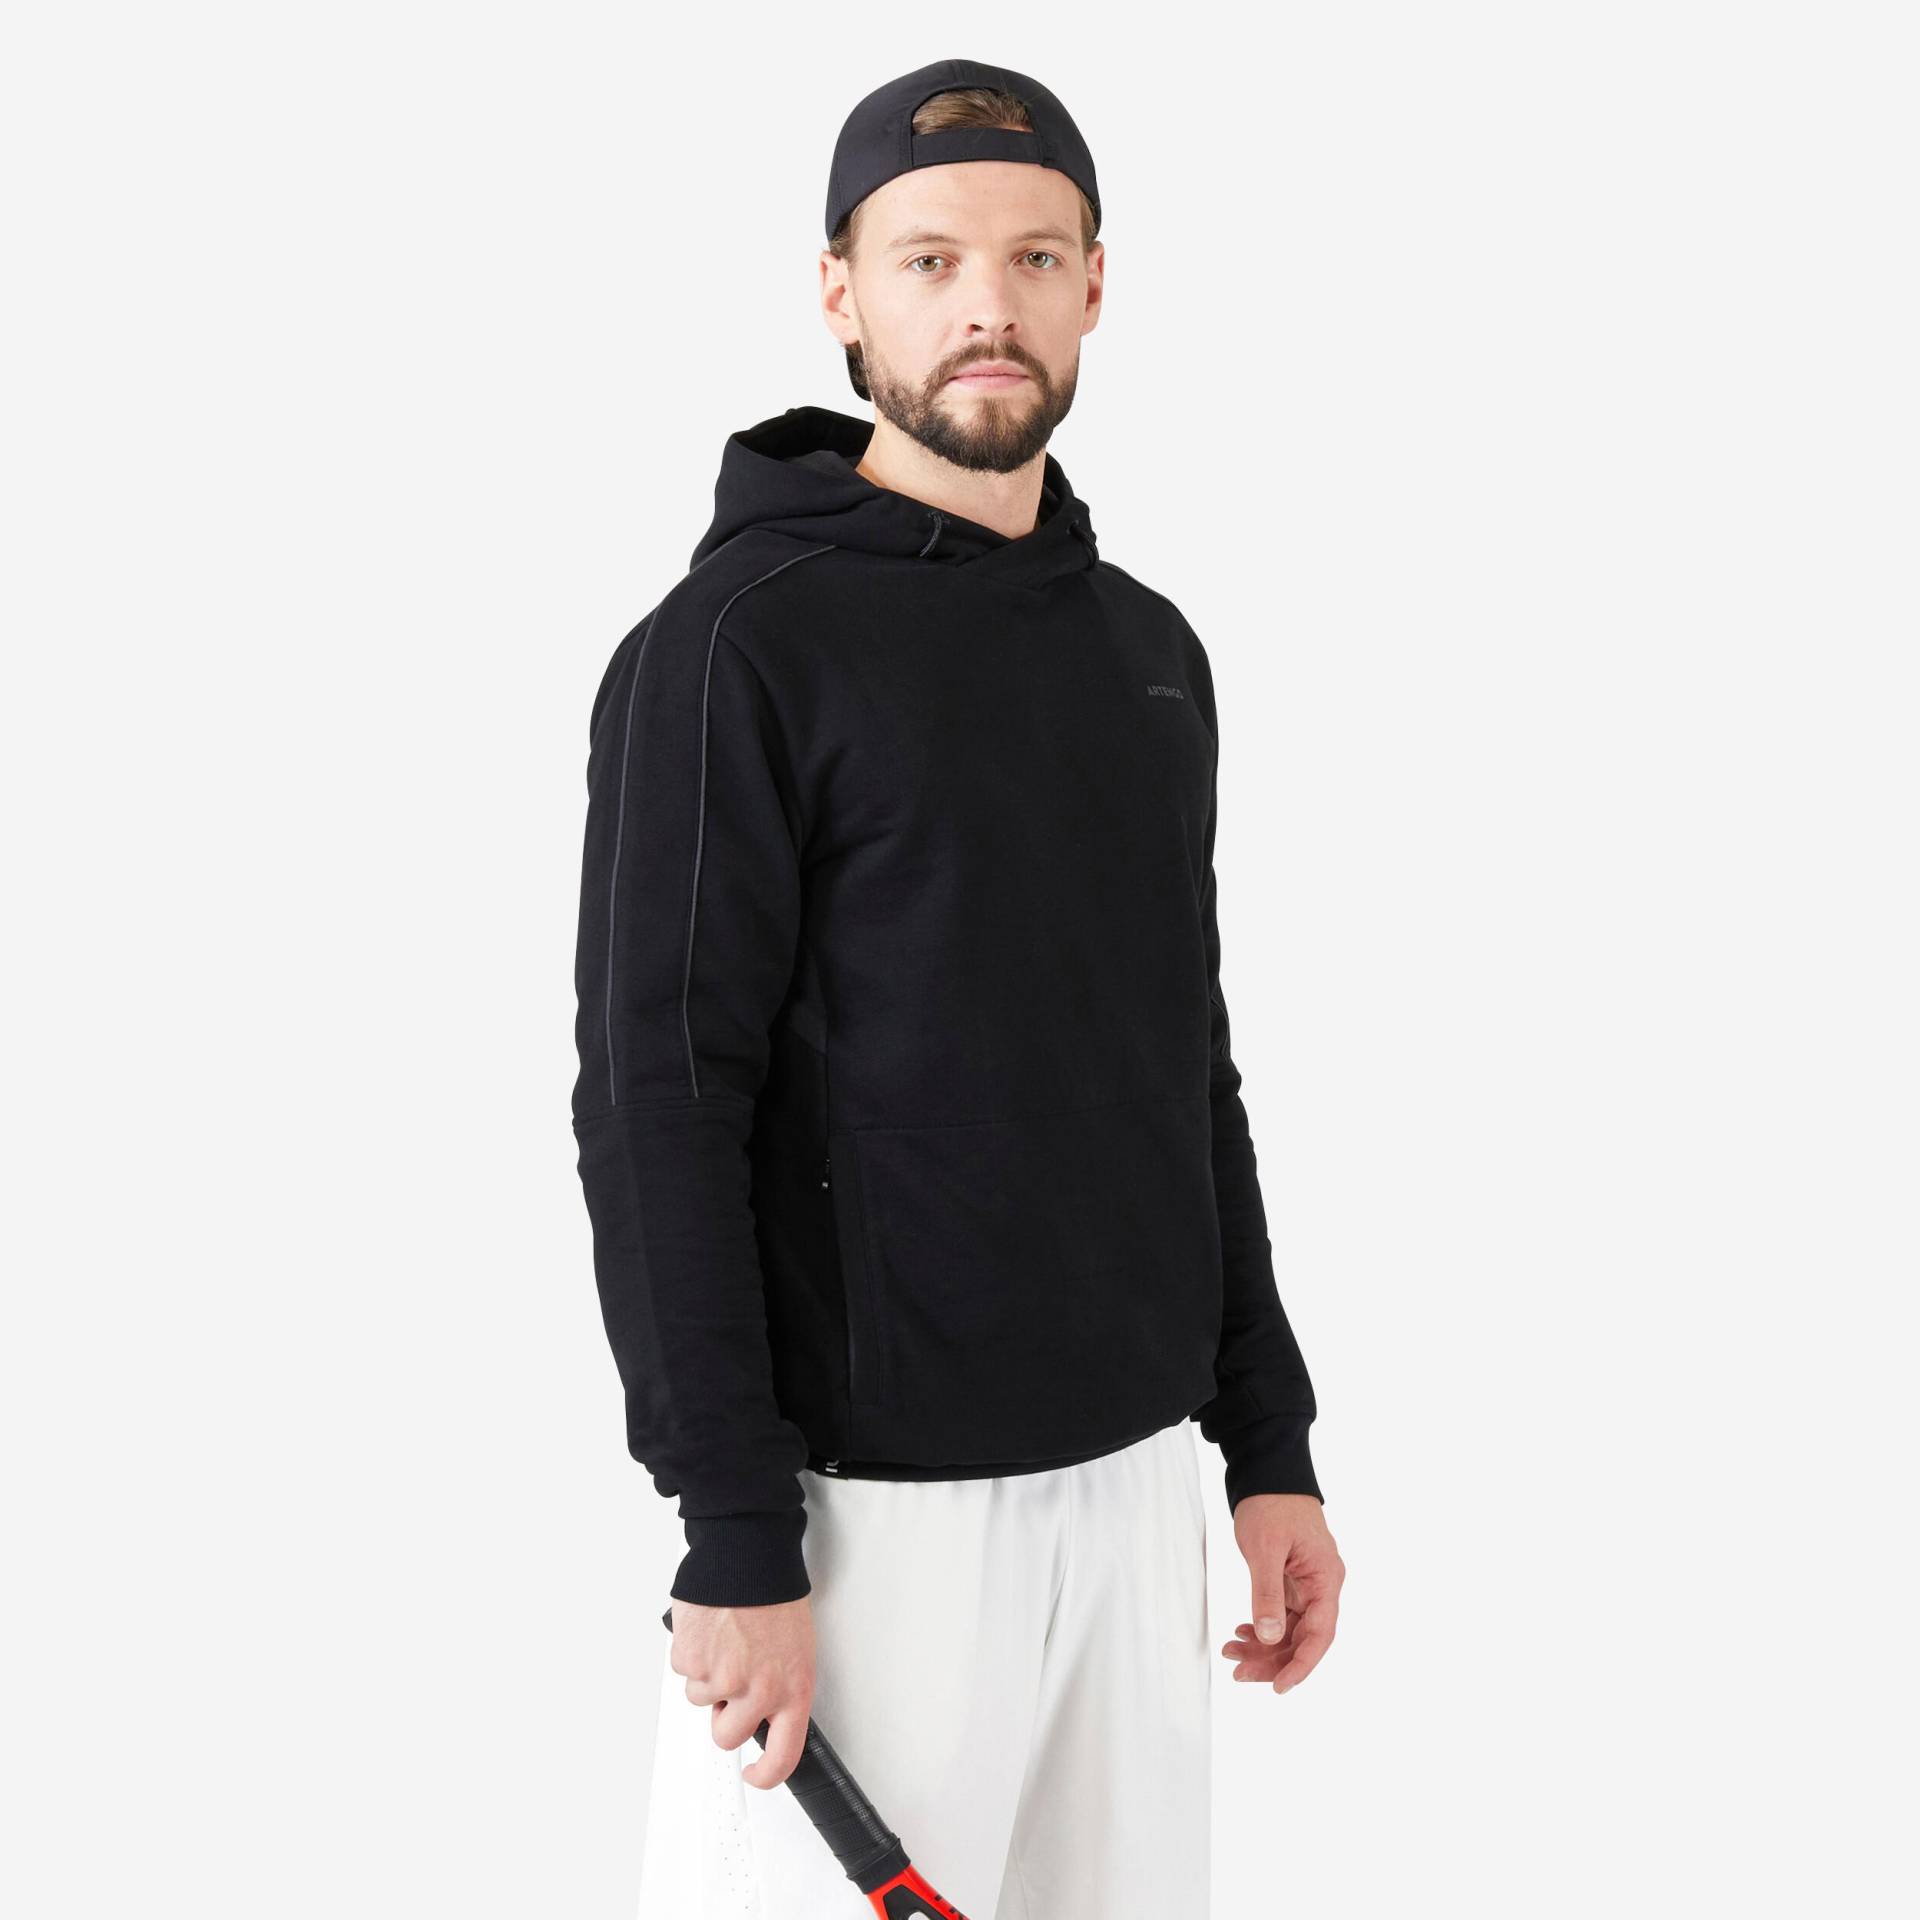 Herren Tennis Kapuzenpullover - Soft schwarz von ARTENGO